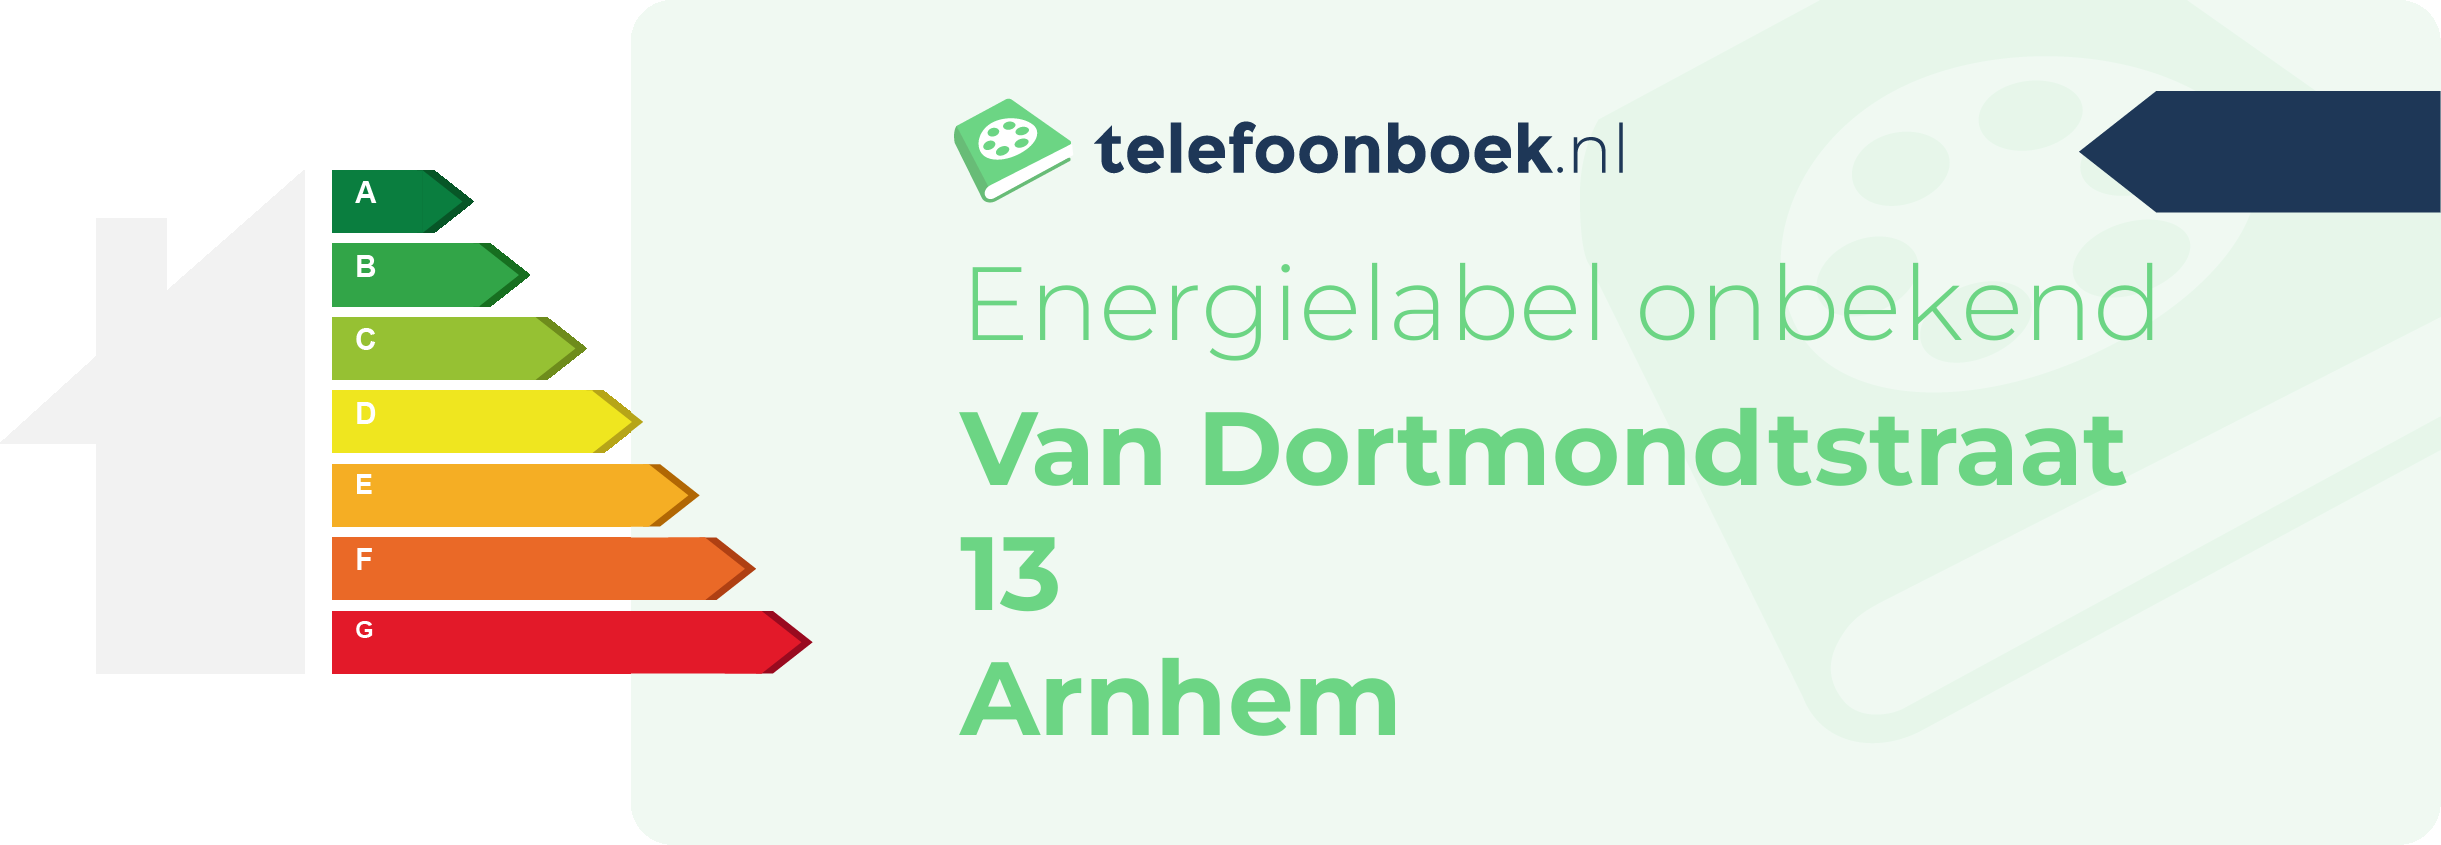 Energielabel Van Dortmondtstraat 13 Arnhem